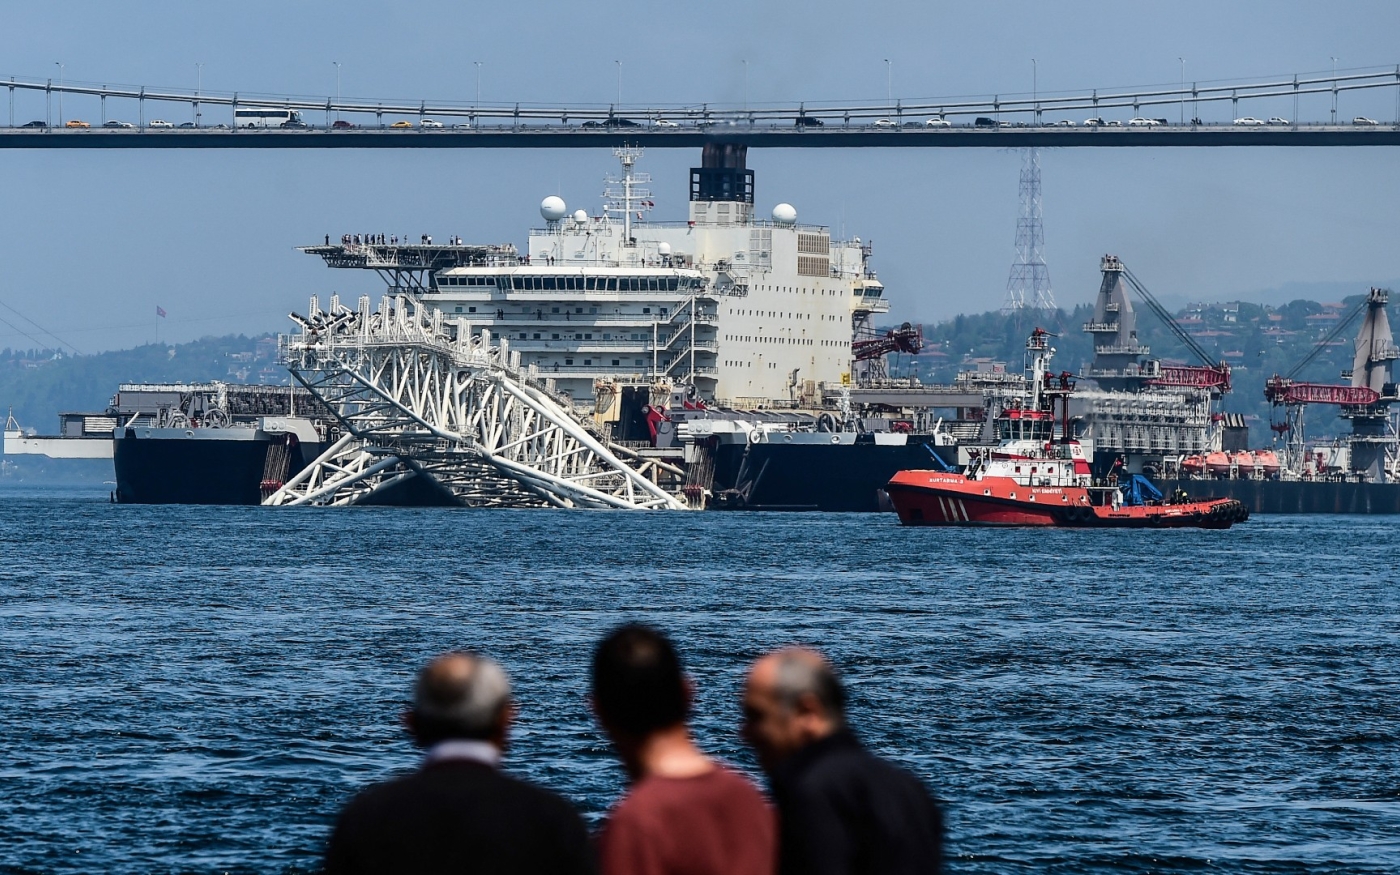 Un navire traverse le Bosphore après l’achèvement de la ligne 1 du gazoduc TurkStream de Gazprom reliant la Russie à la Turquie via la mer Noire, le 2 mai 2018 à Istanbul (AFP)